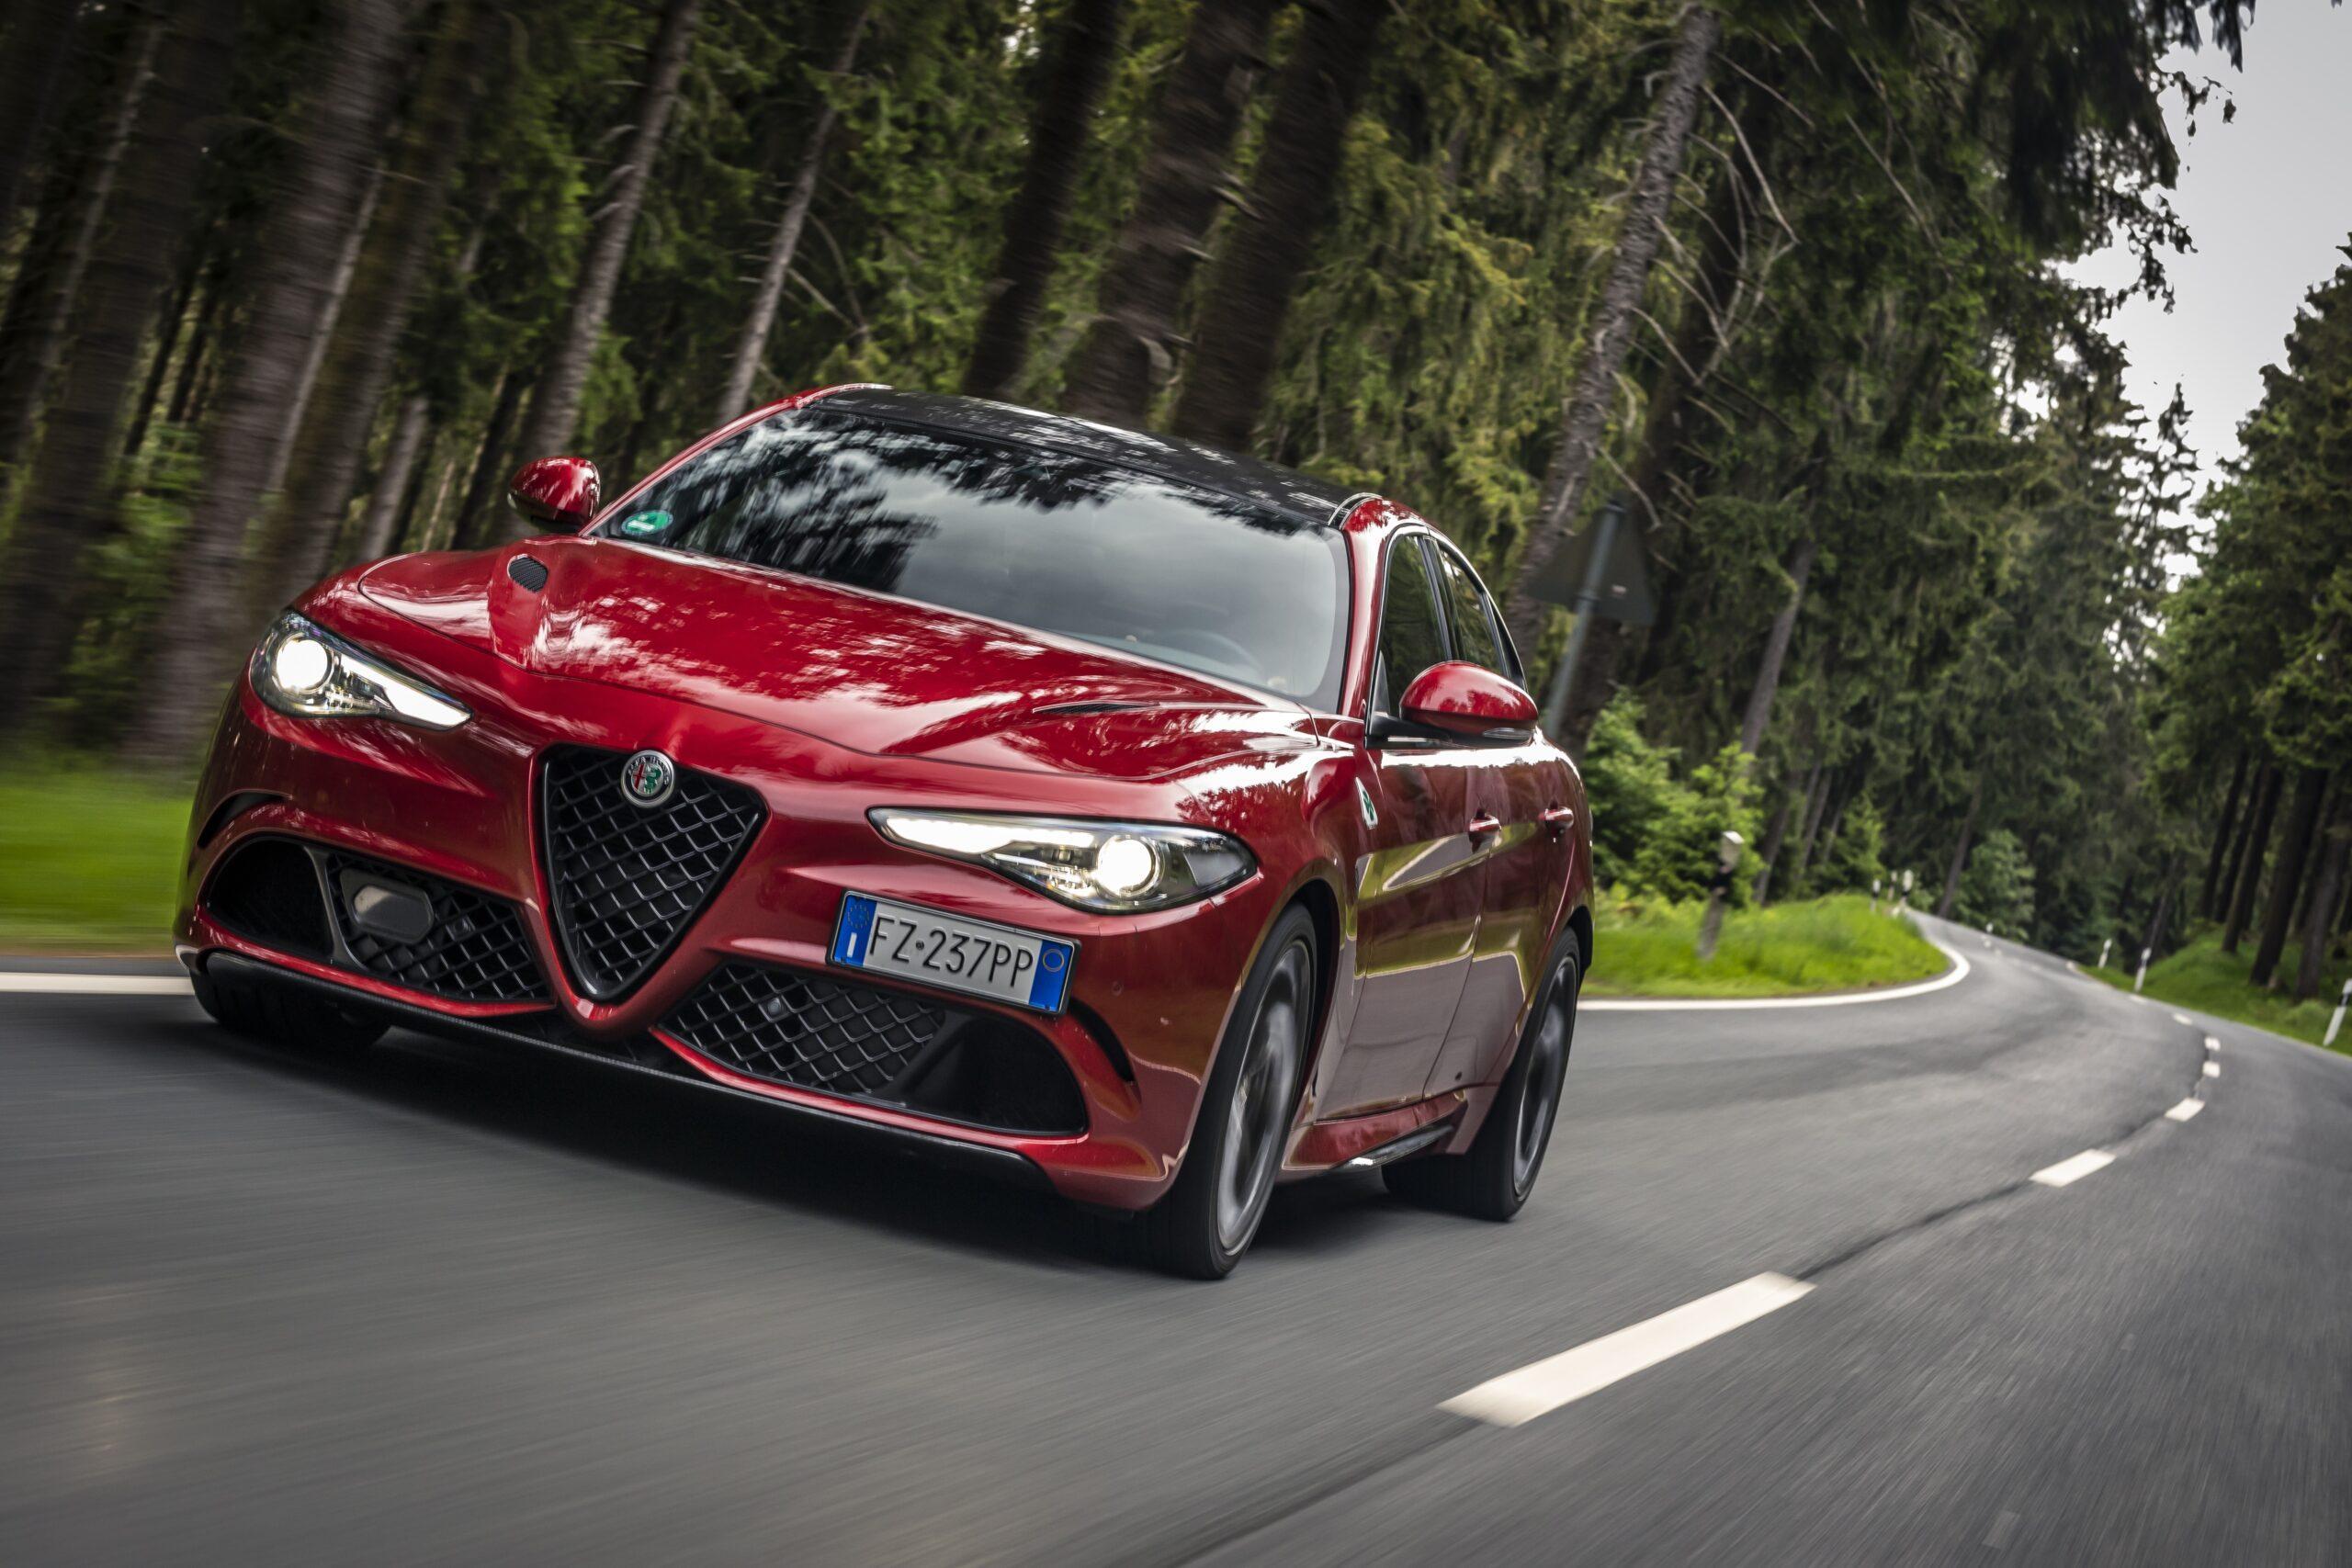 Alfa Romeo multate per eccesso di velocità: è record negli USA